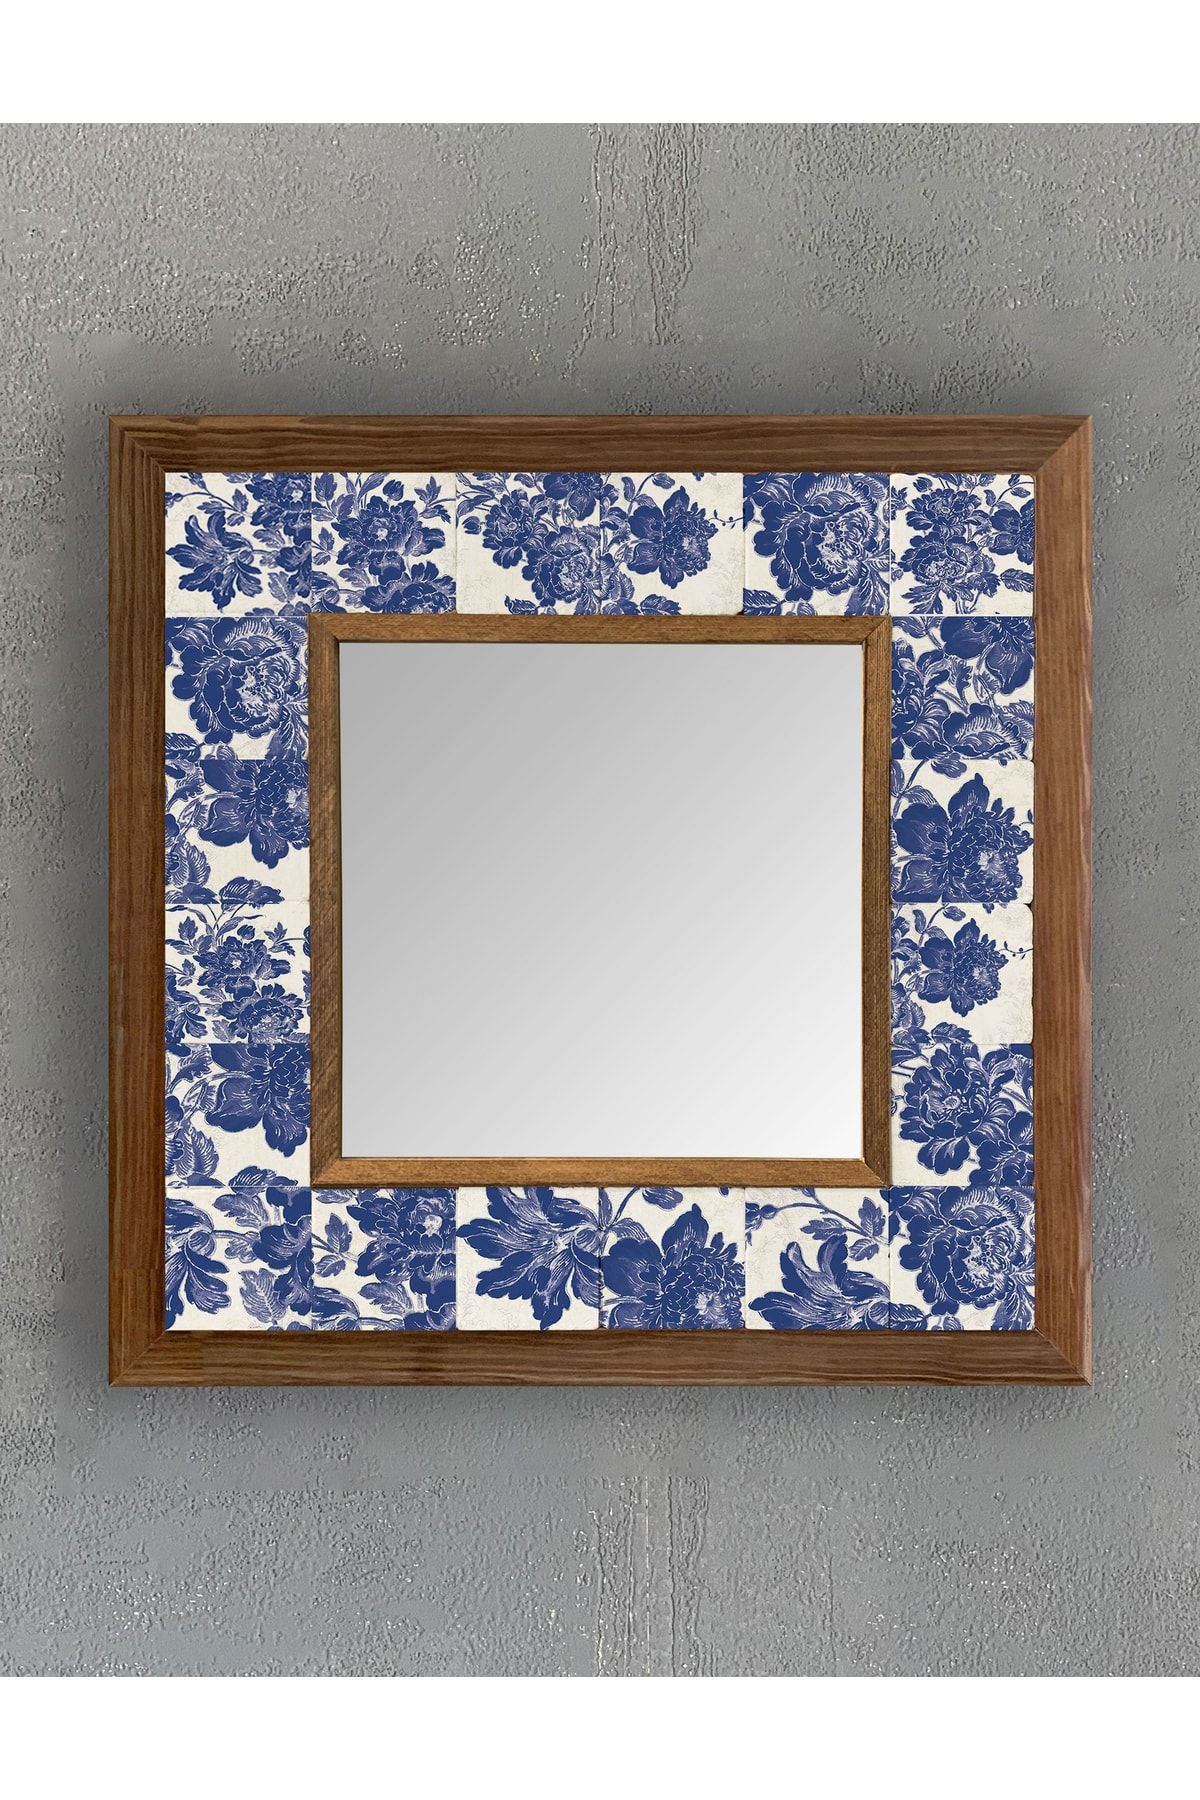 Oscar Stone Decor Masif Çerçeveli Mozaik Taş (mermer) Ayna 33x33 Cm Seramik Desenli Mavi Çiçek Tema